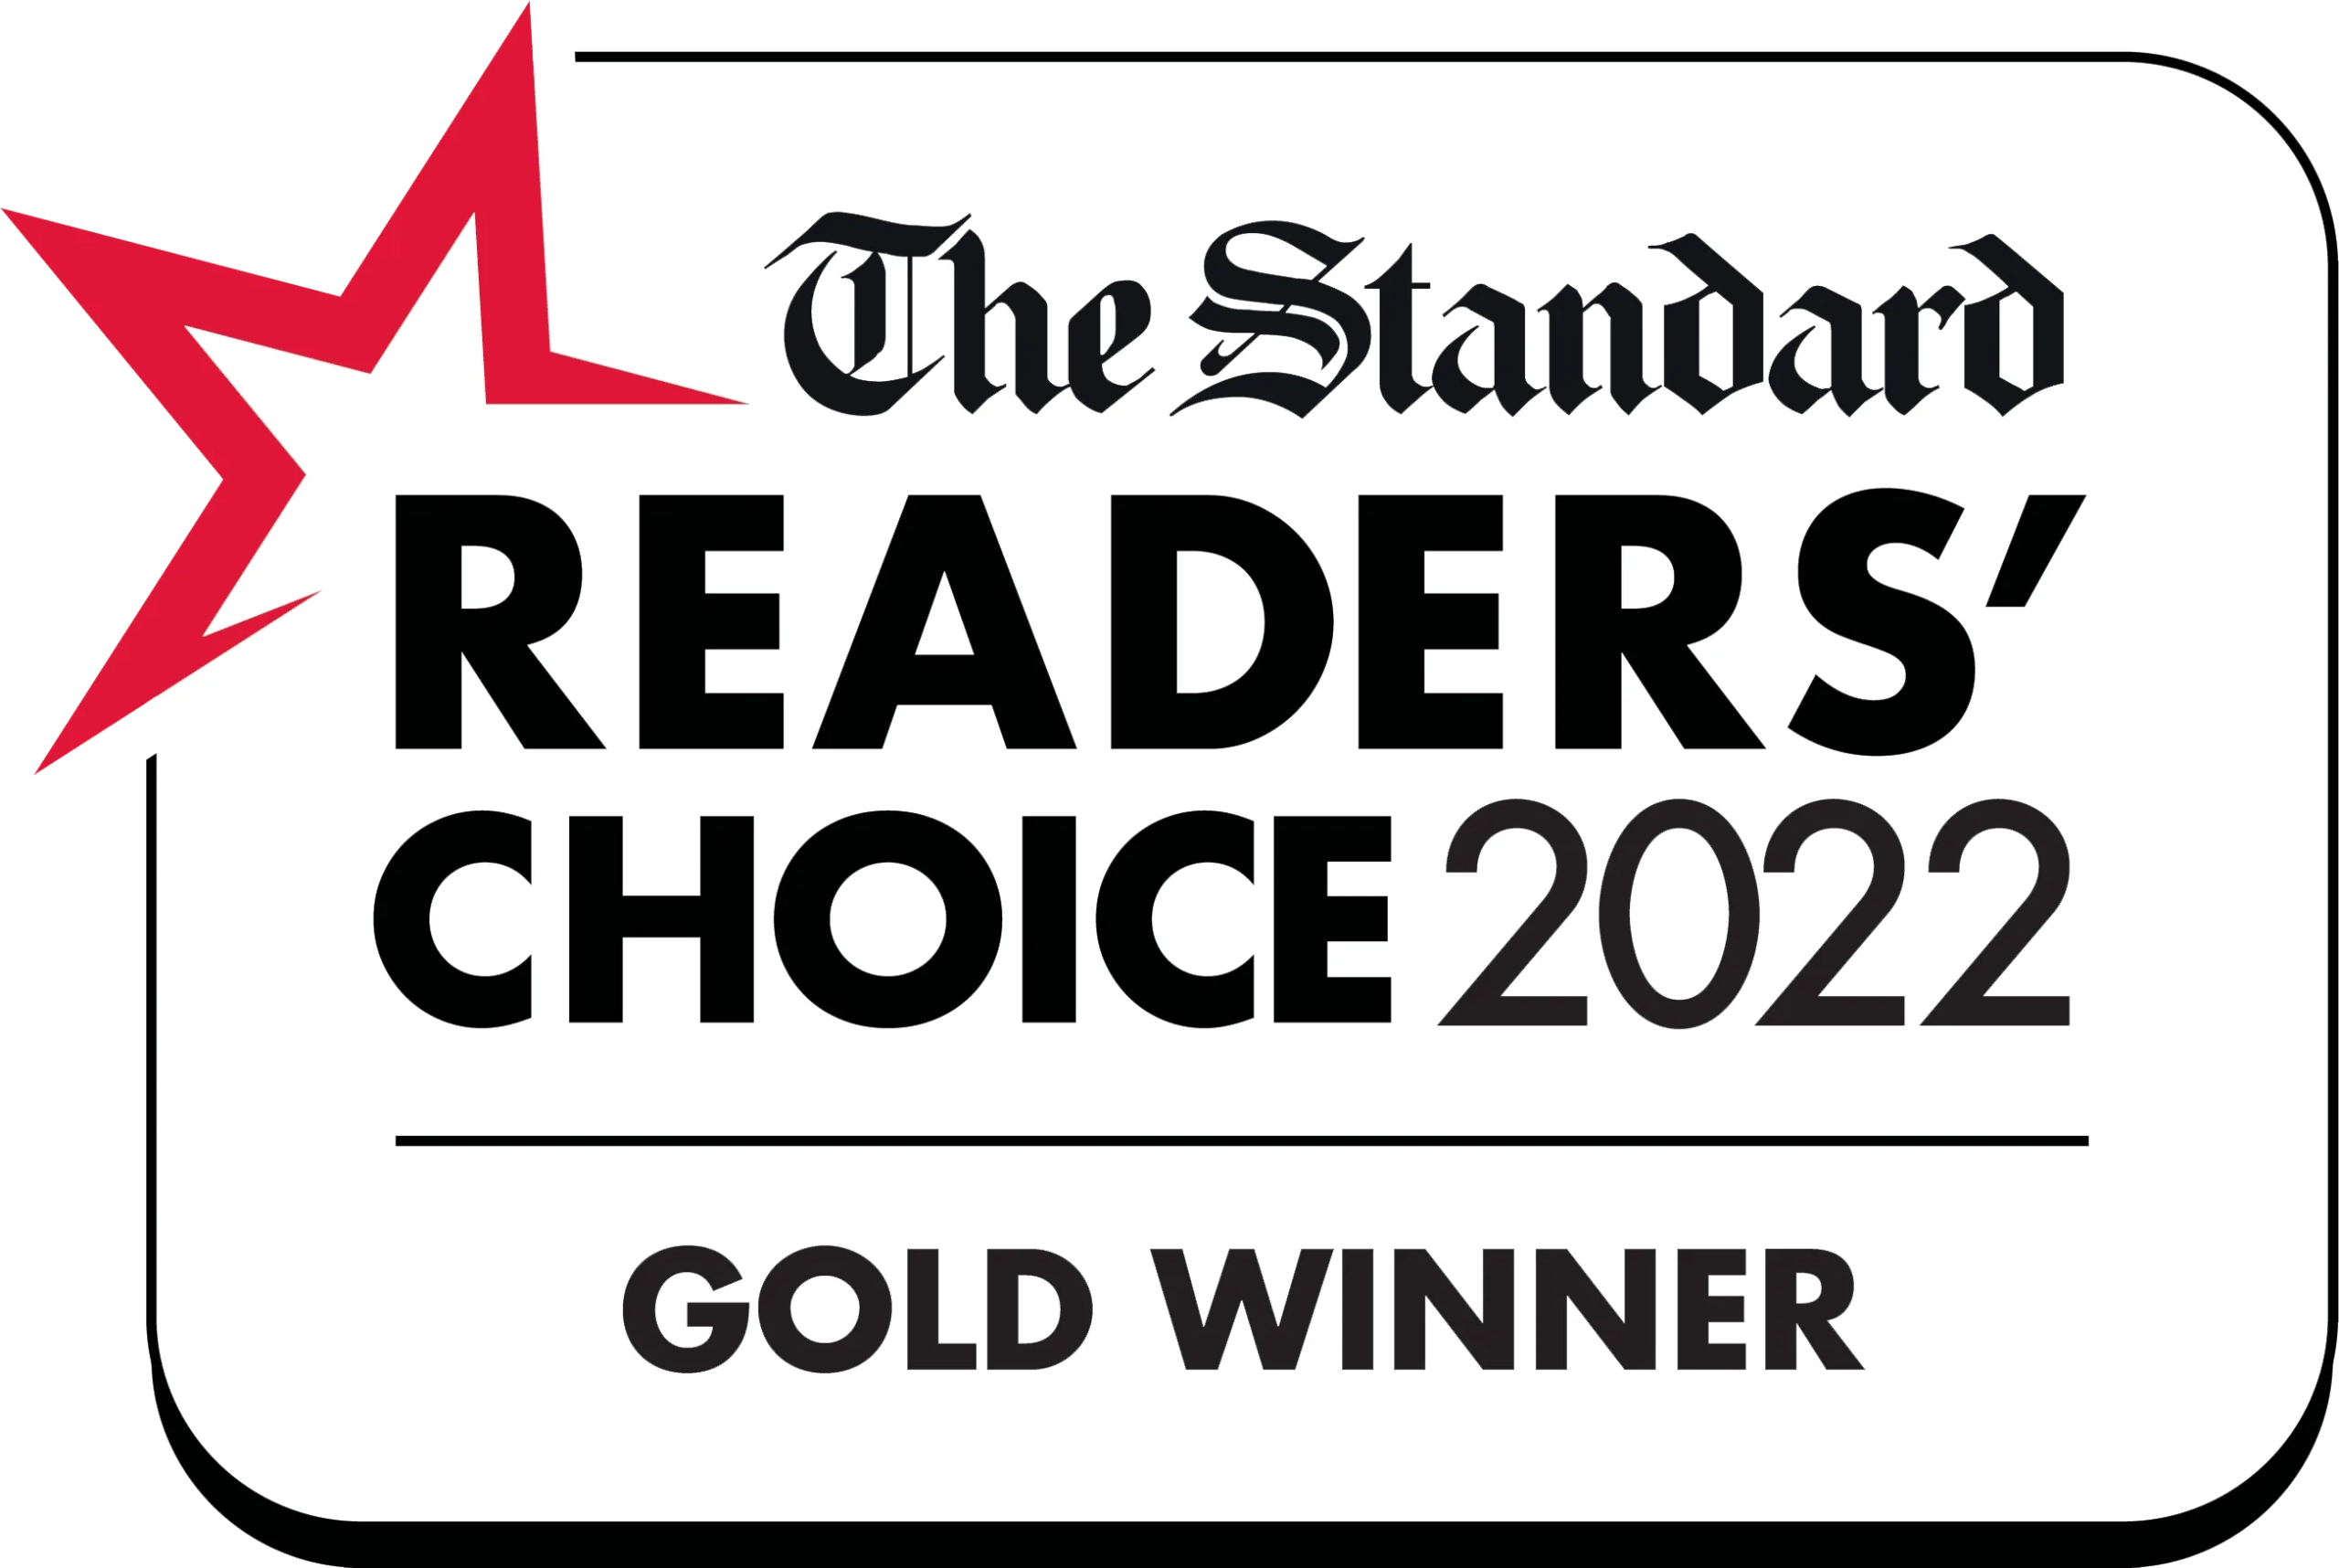 The Standard Reader's Choice 2022 Gold Winner